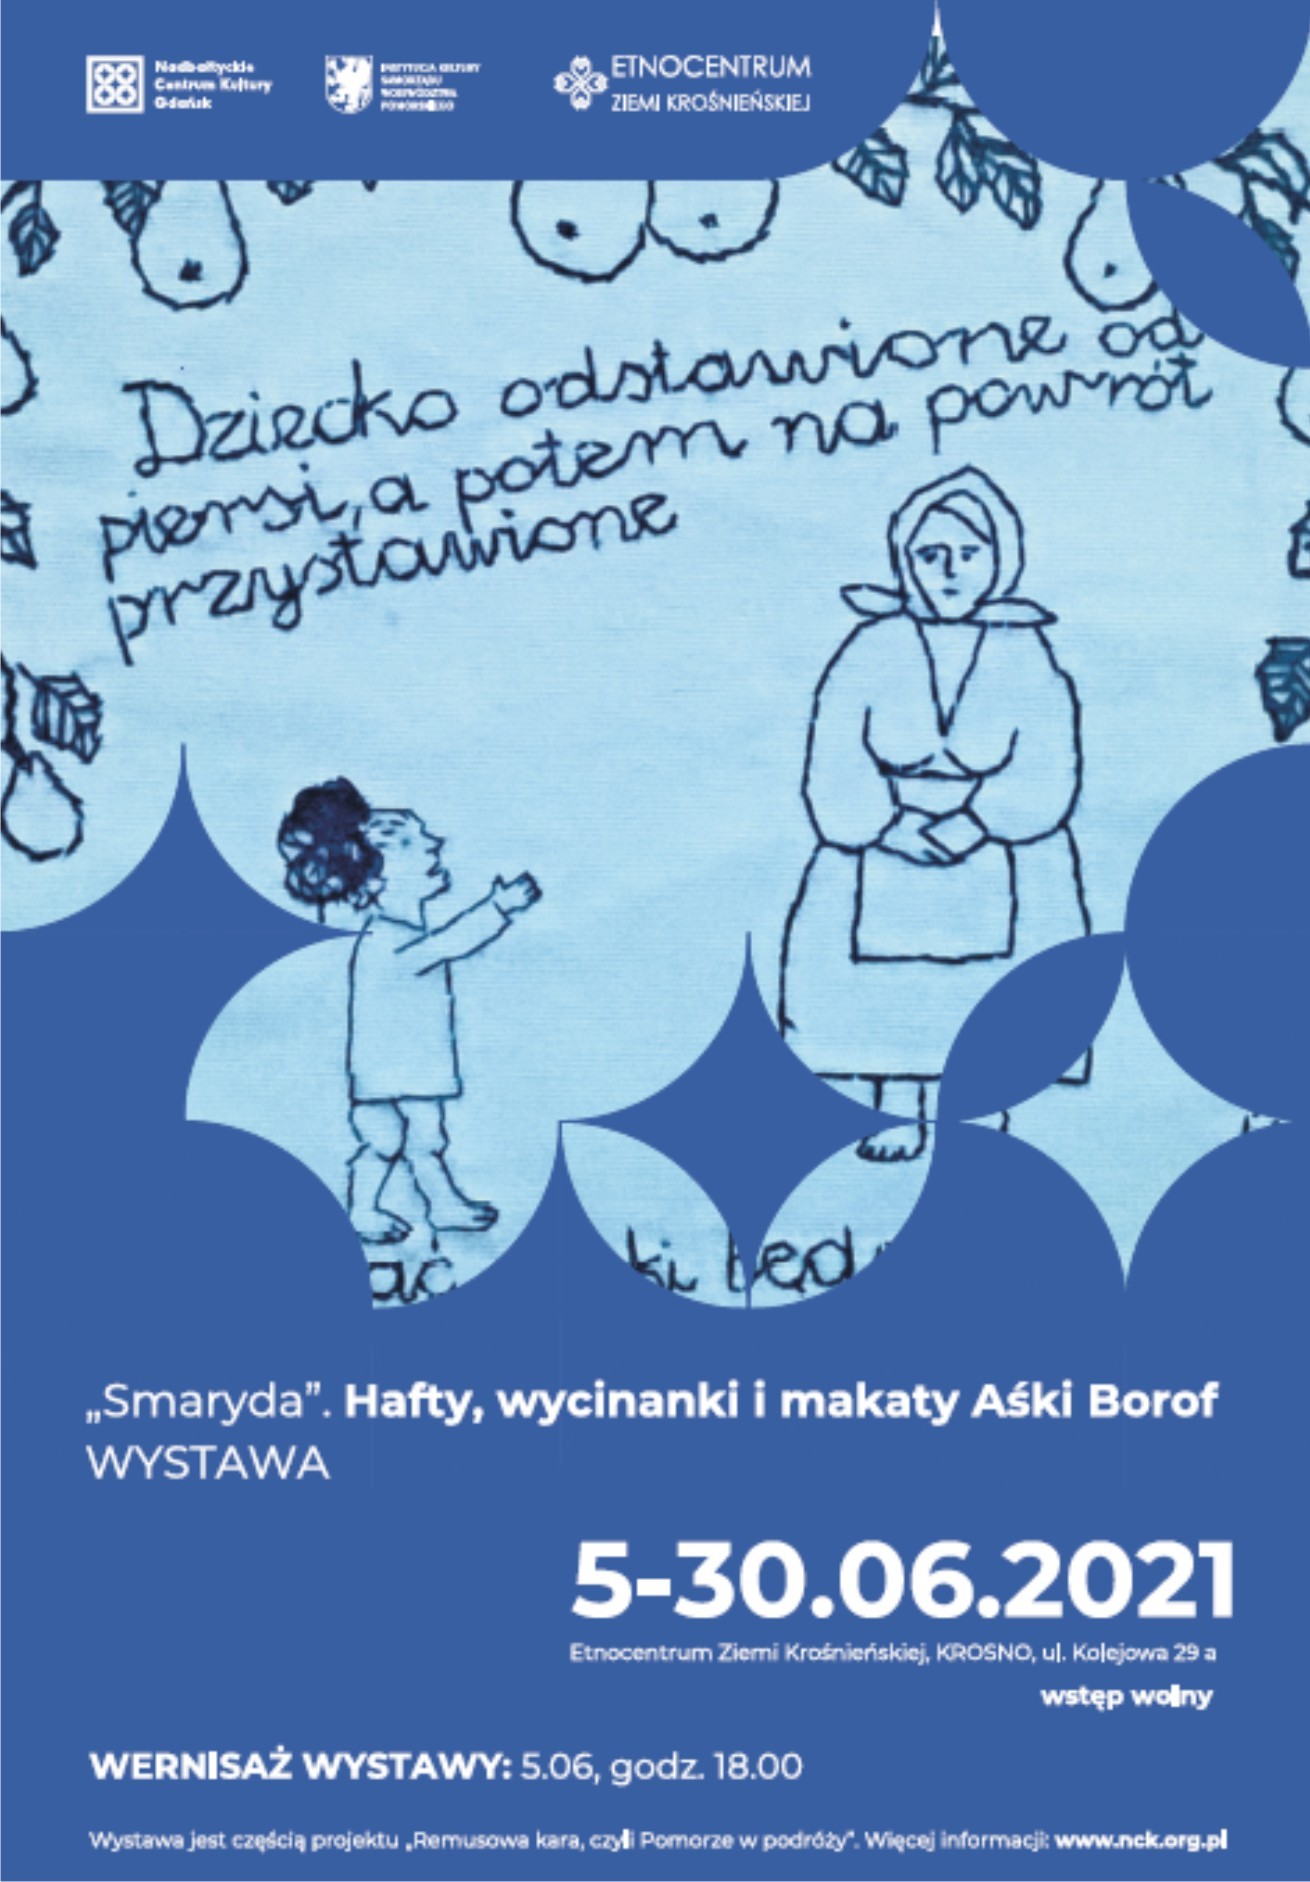 niebieska makatka z kobietą i dzieckiem i tekstem ludowym